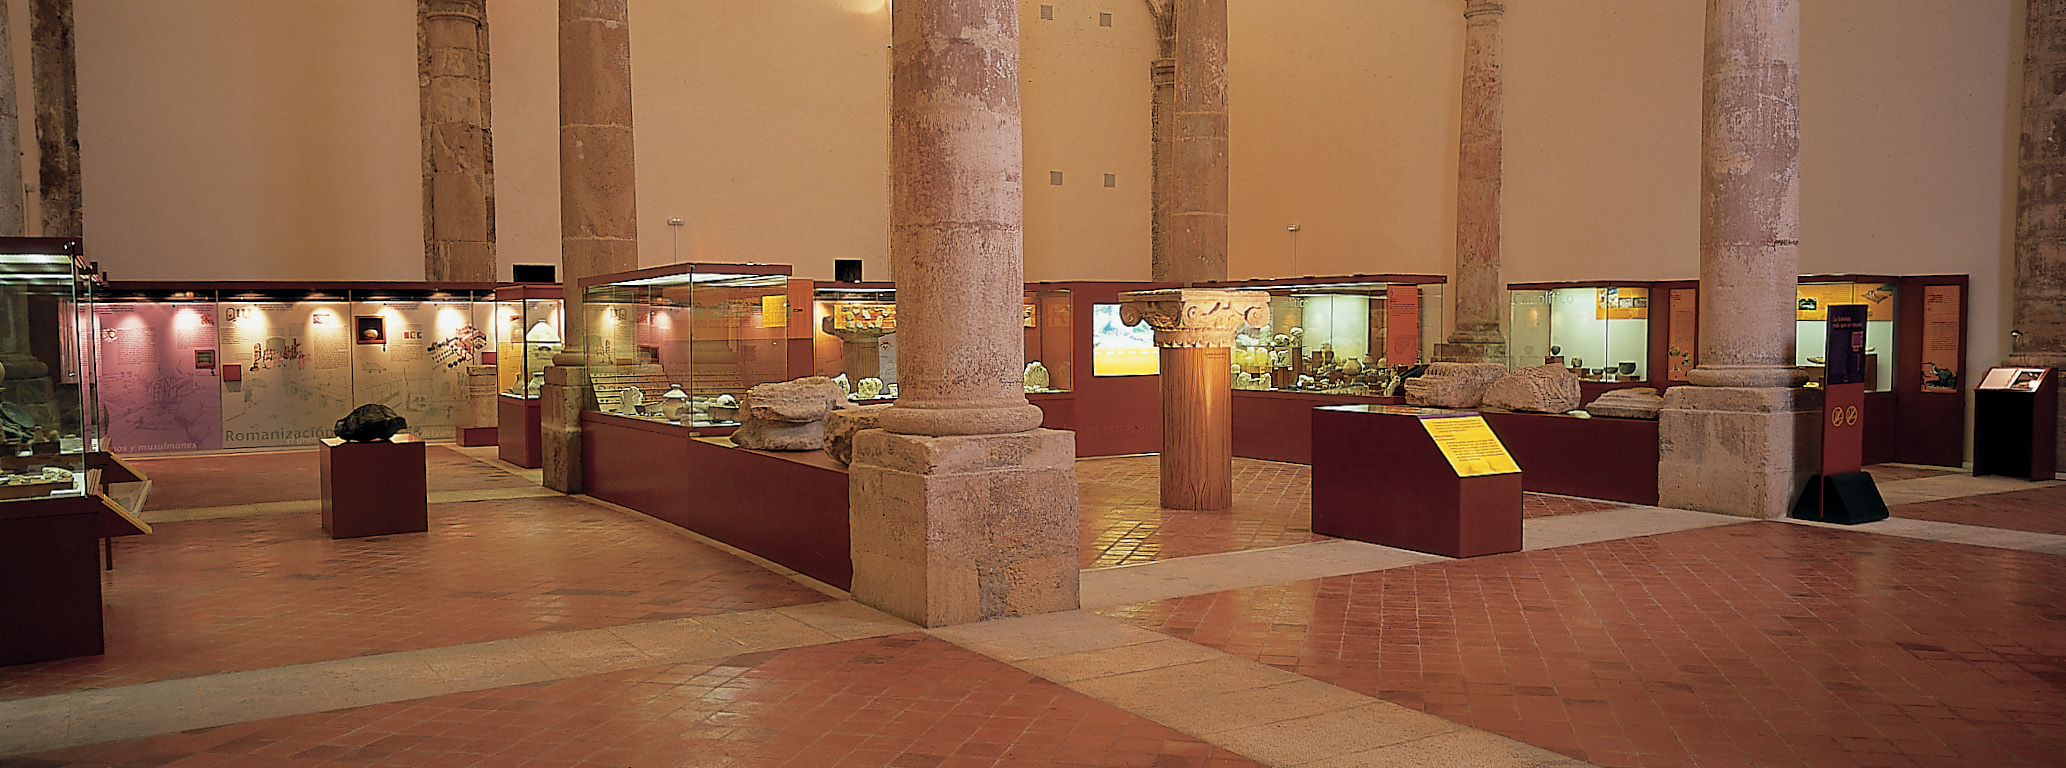 Caravaca celebra el Día de los Museos con puertas abiertas y visitas guiadas a yacimientos arqueológicos